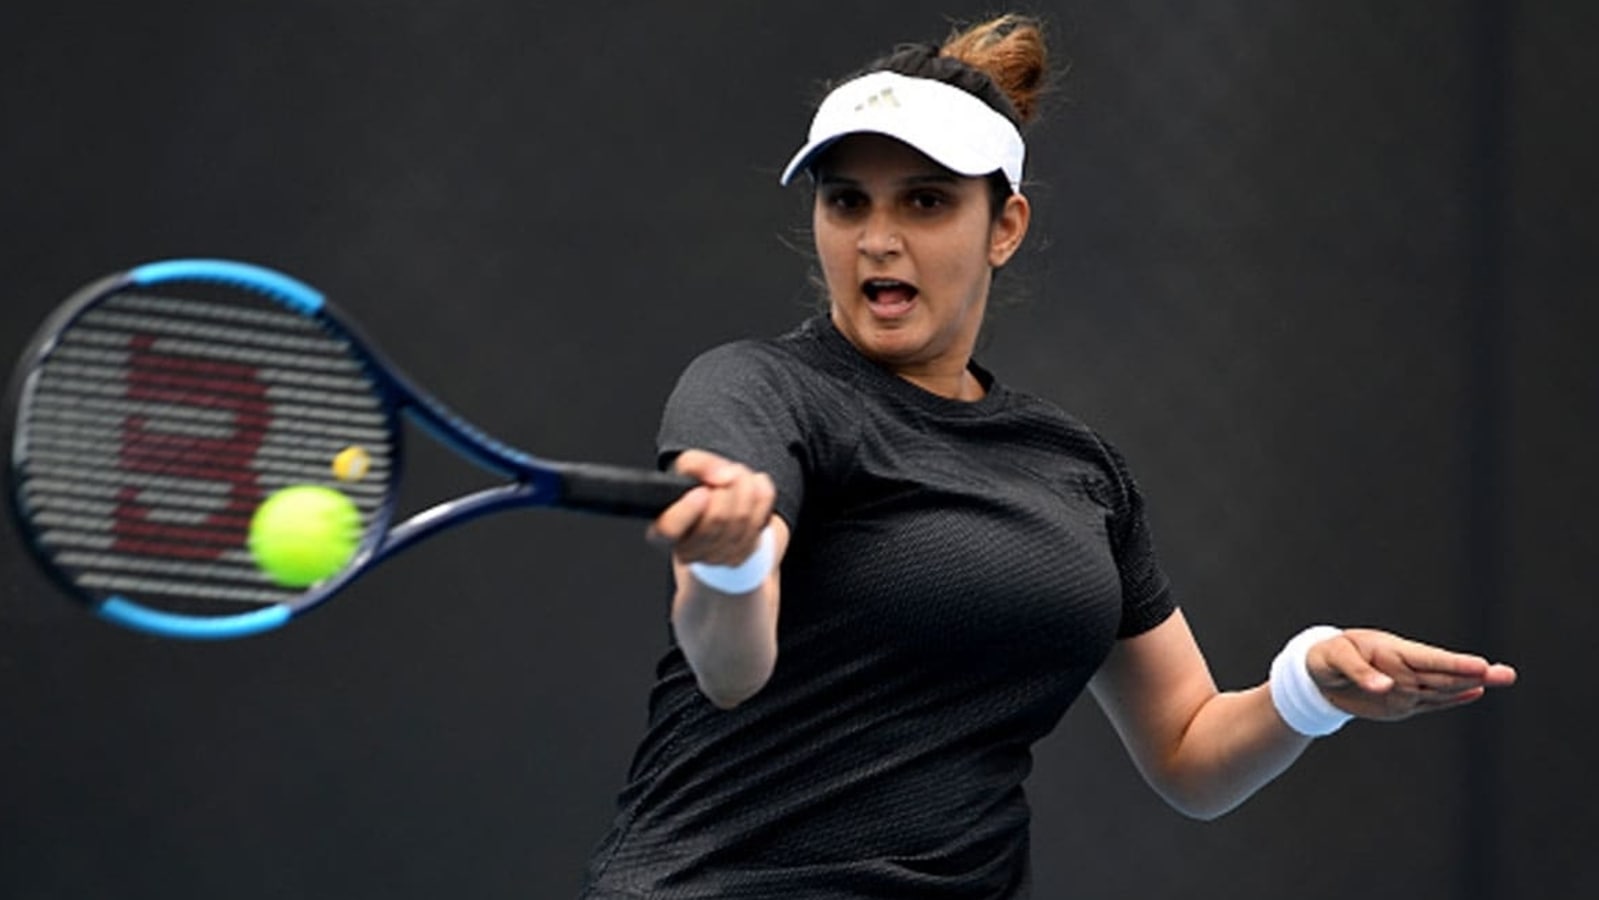 Xxx Sania Mirja Bf - Sania Mirza to retire at Dubai meet next month | Tennis News - Hindustan  Times